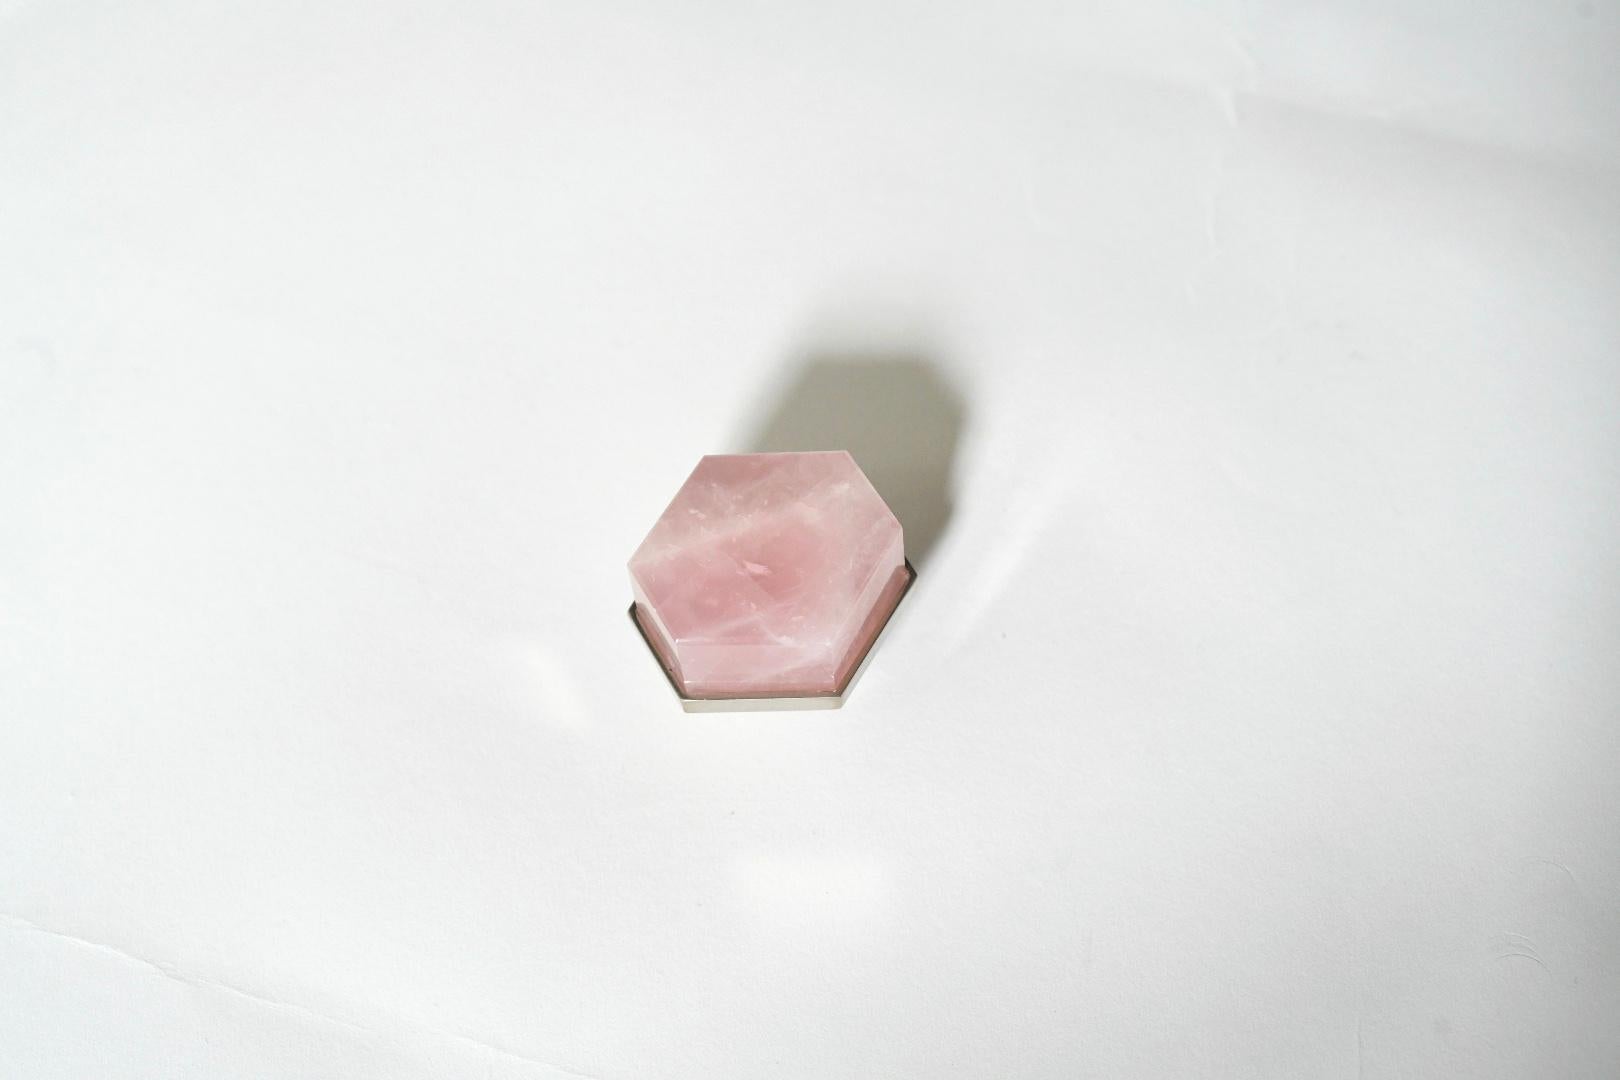 Flacher sechseckiger, rosafarbener Bergkristall-Knopf mit vernickeltem Sockel. Erstellt von Phoenix Gallery, NYC.
Kundenspezifische Größe und Ausführung auf Anfrage.